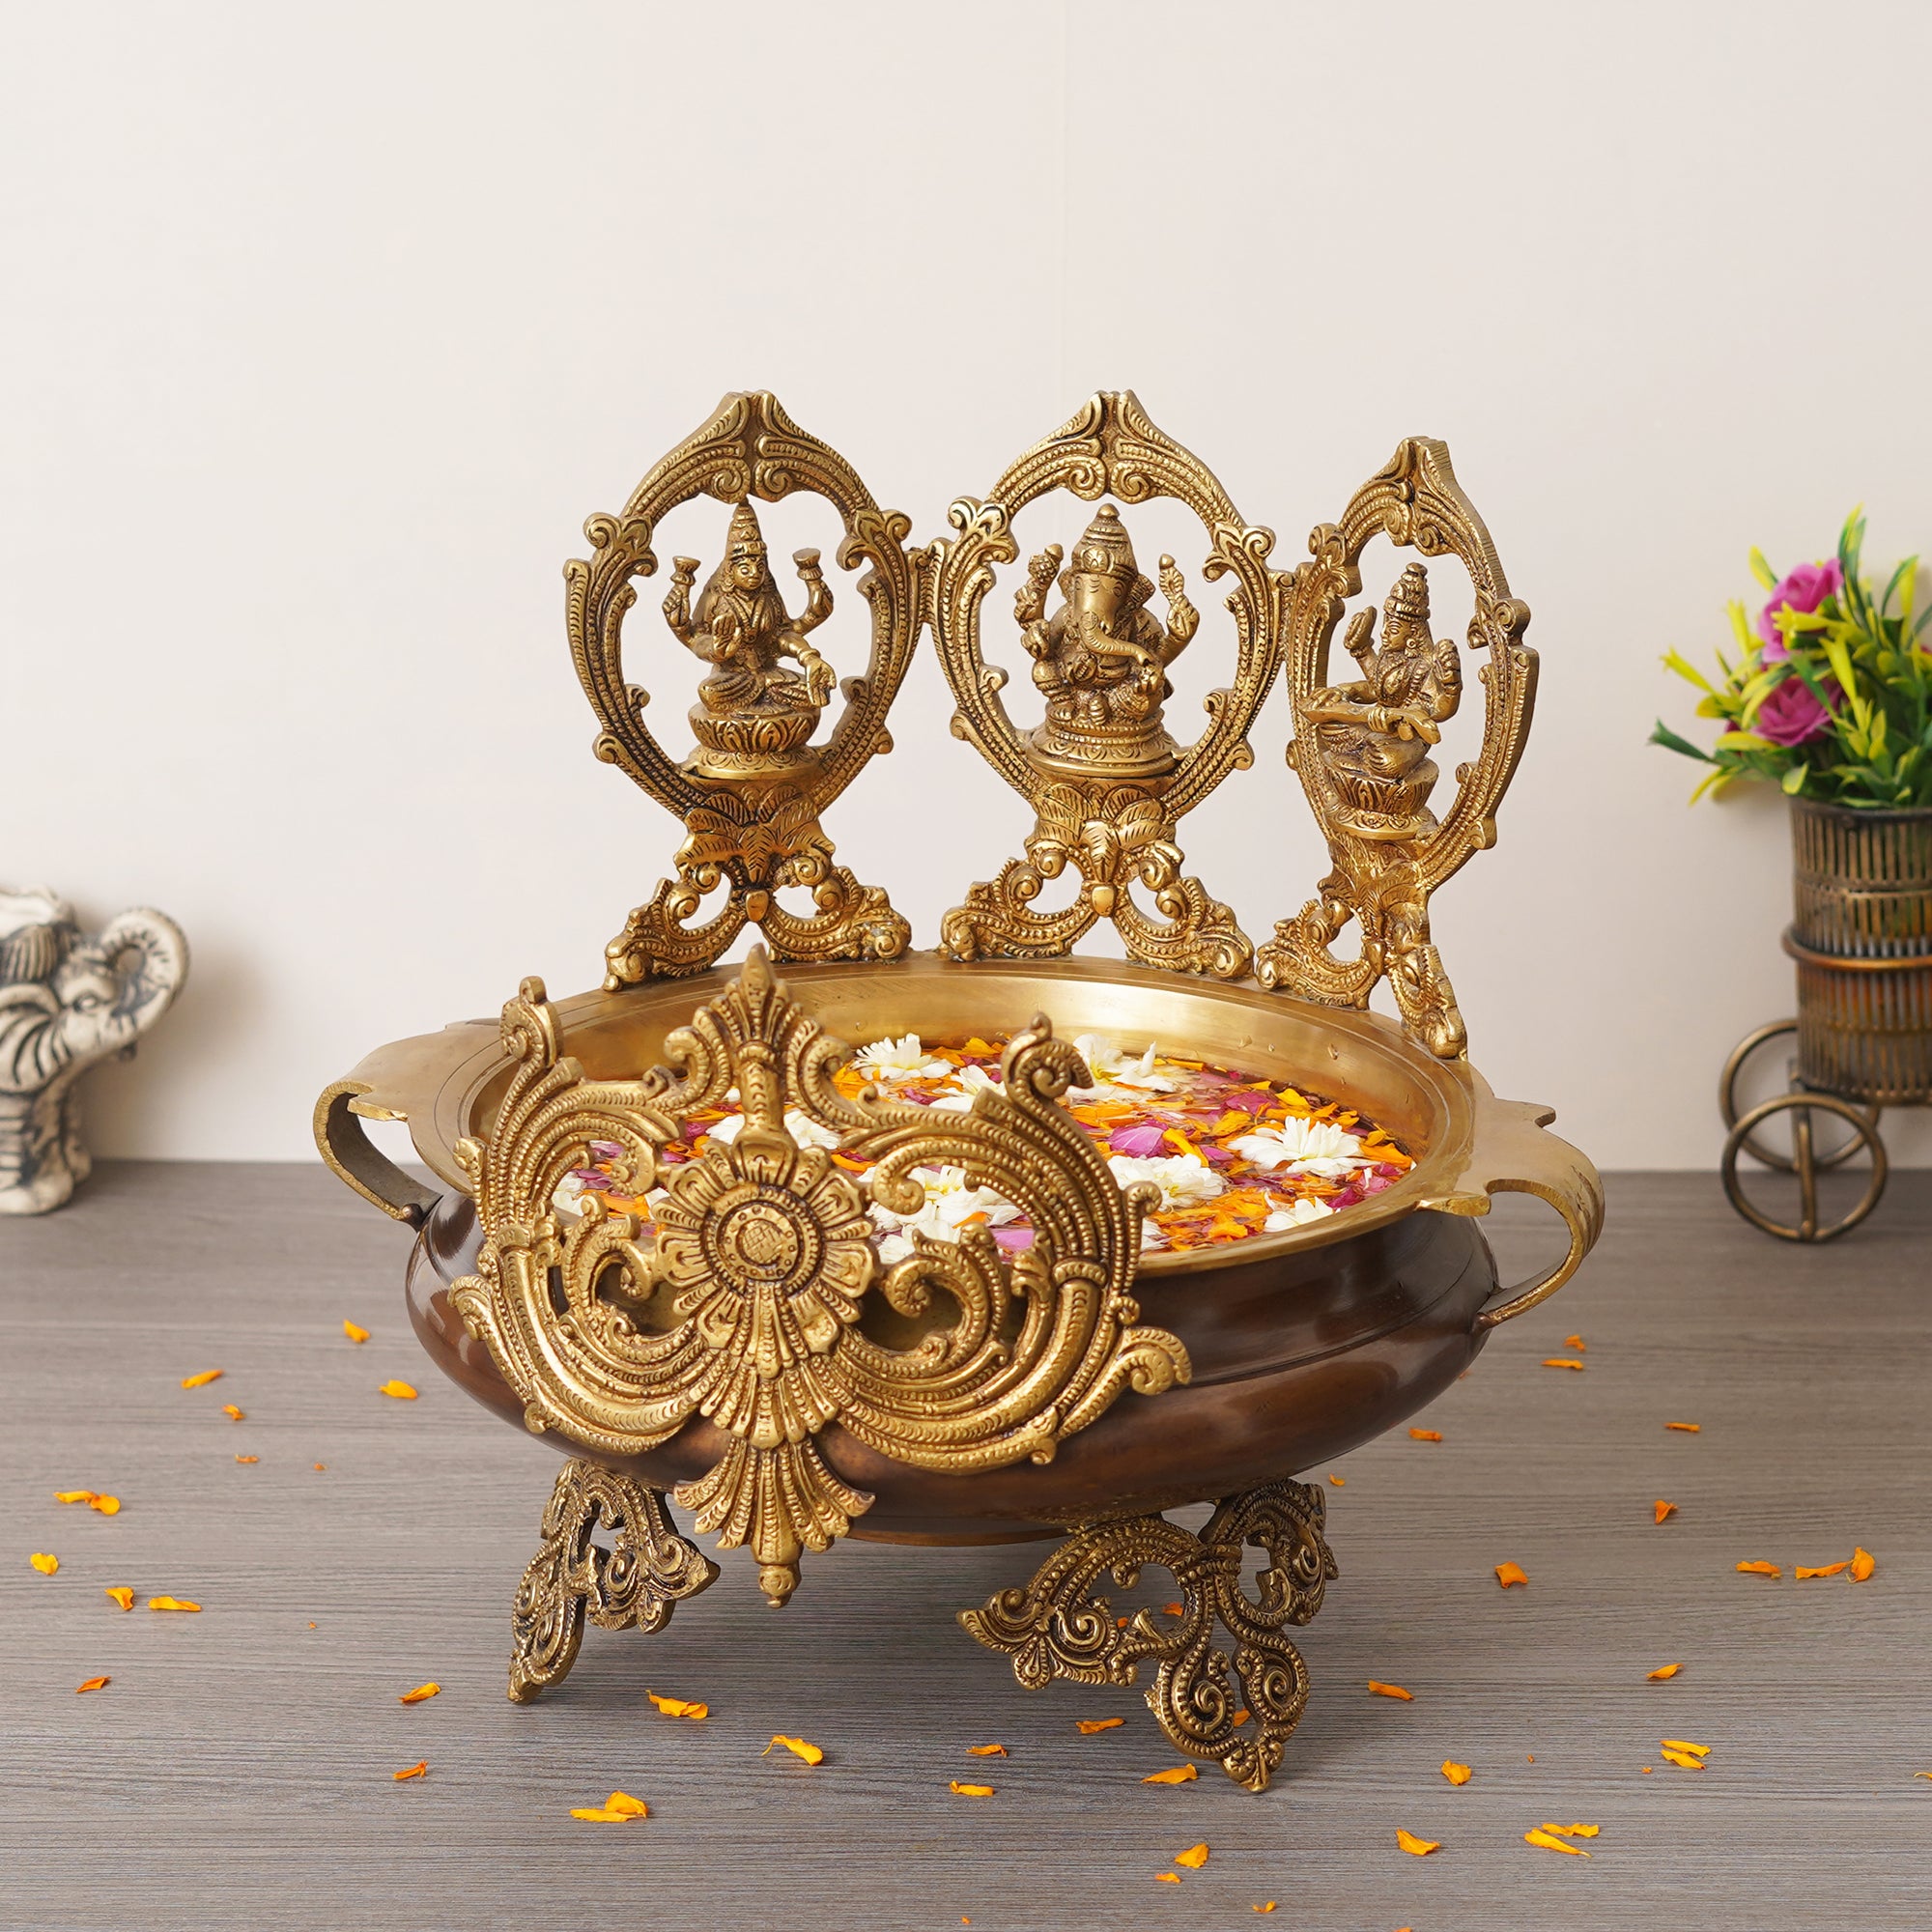 eCraftIndia Golden Lord Ganesha, Goddess Lakshmi & Saraswati Idols Decorative Brass Urli